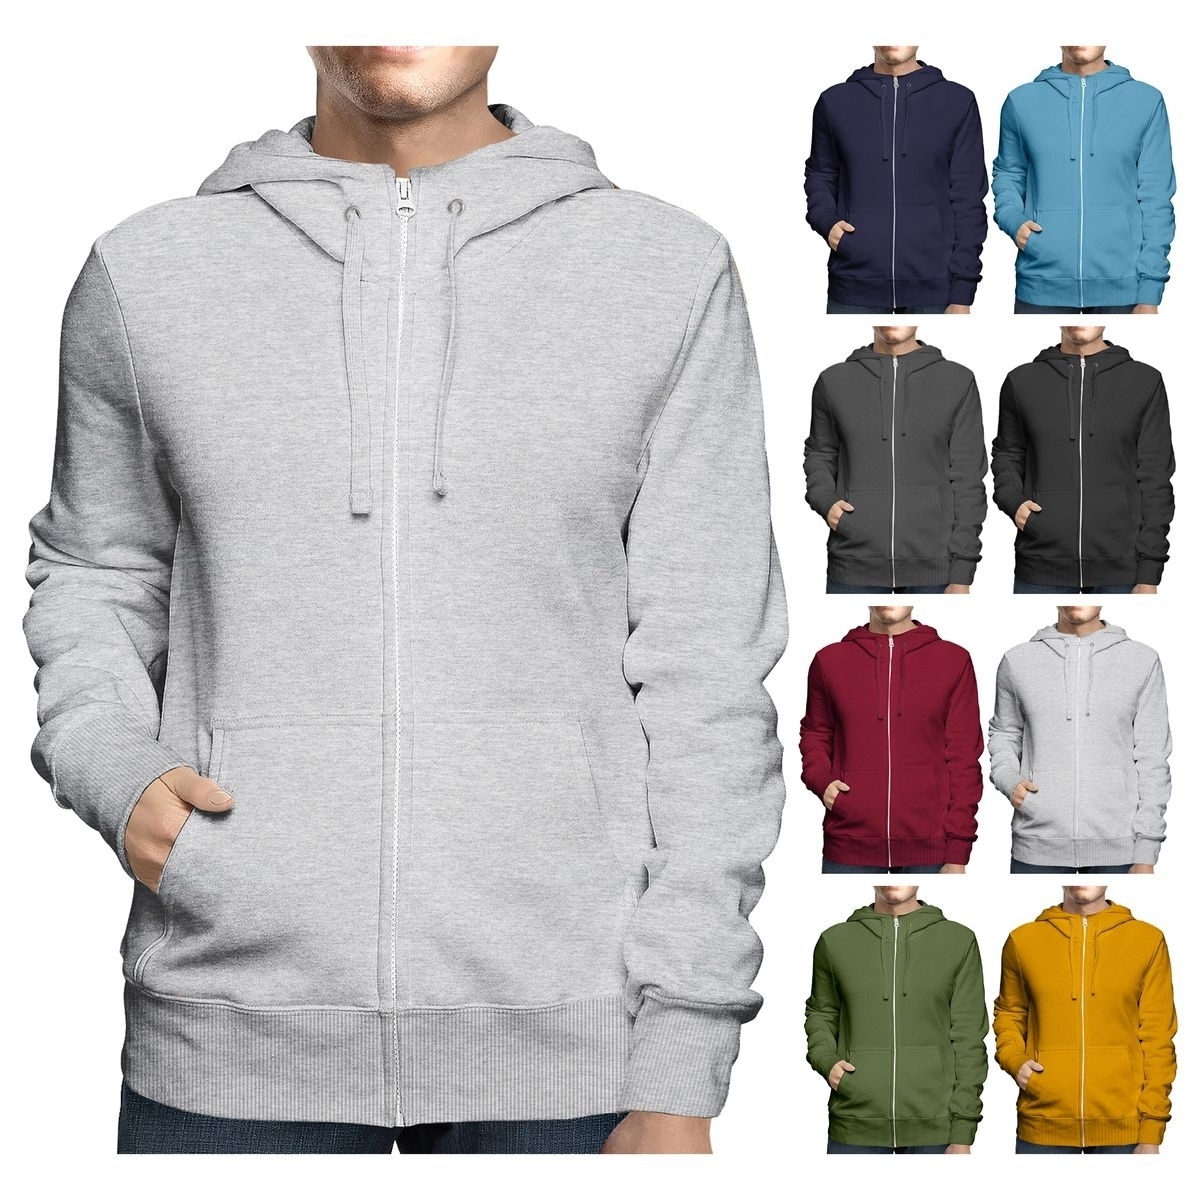 Men's Big & Tall Winter Warm Soft Cozy Full Zip-Up Fleece Lined Hoodie Sweatshirt - Black, Large